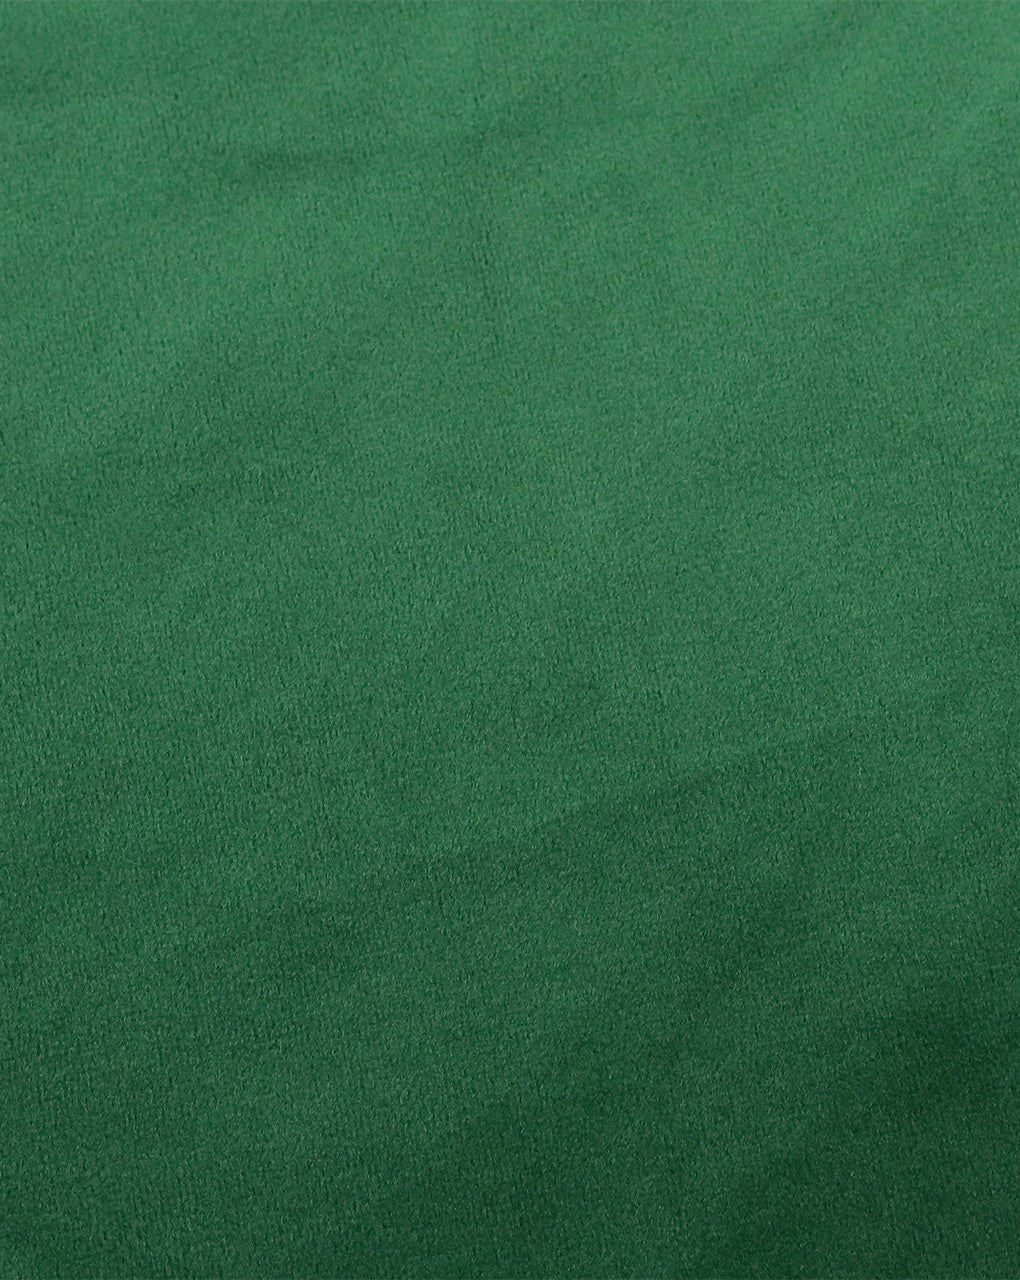 GREEN PLAIN VELVET LYCRA FABRIC ( WIDTH 58 INCHES )